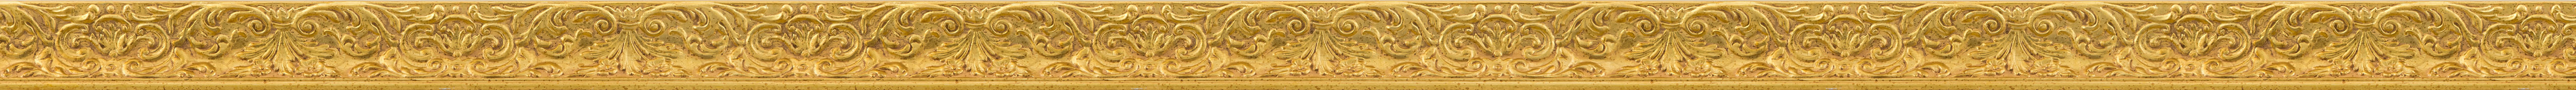 Κομψή κορνίζα με φύλλο χρυσού frame